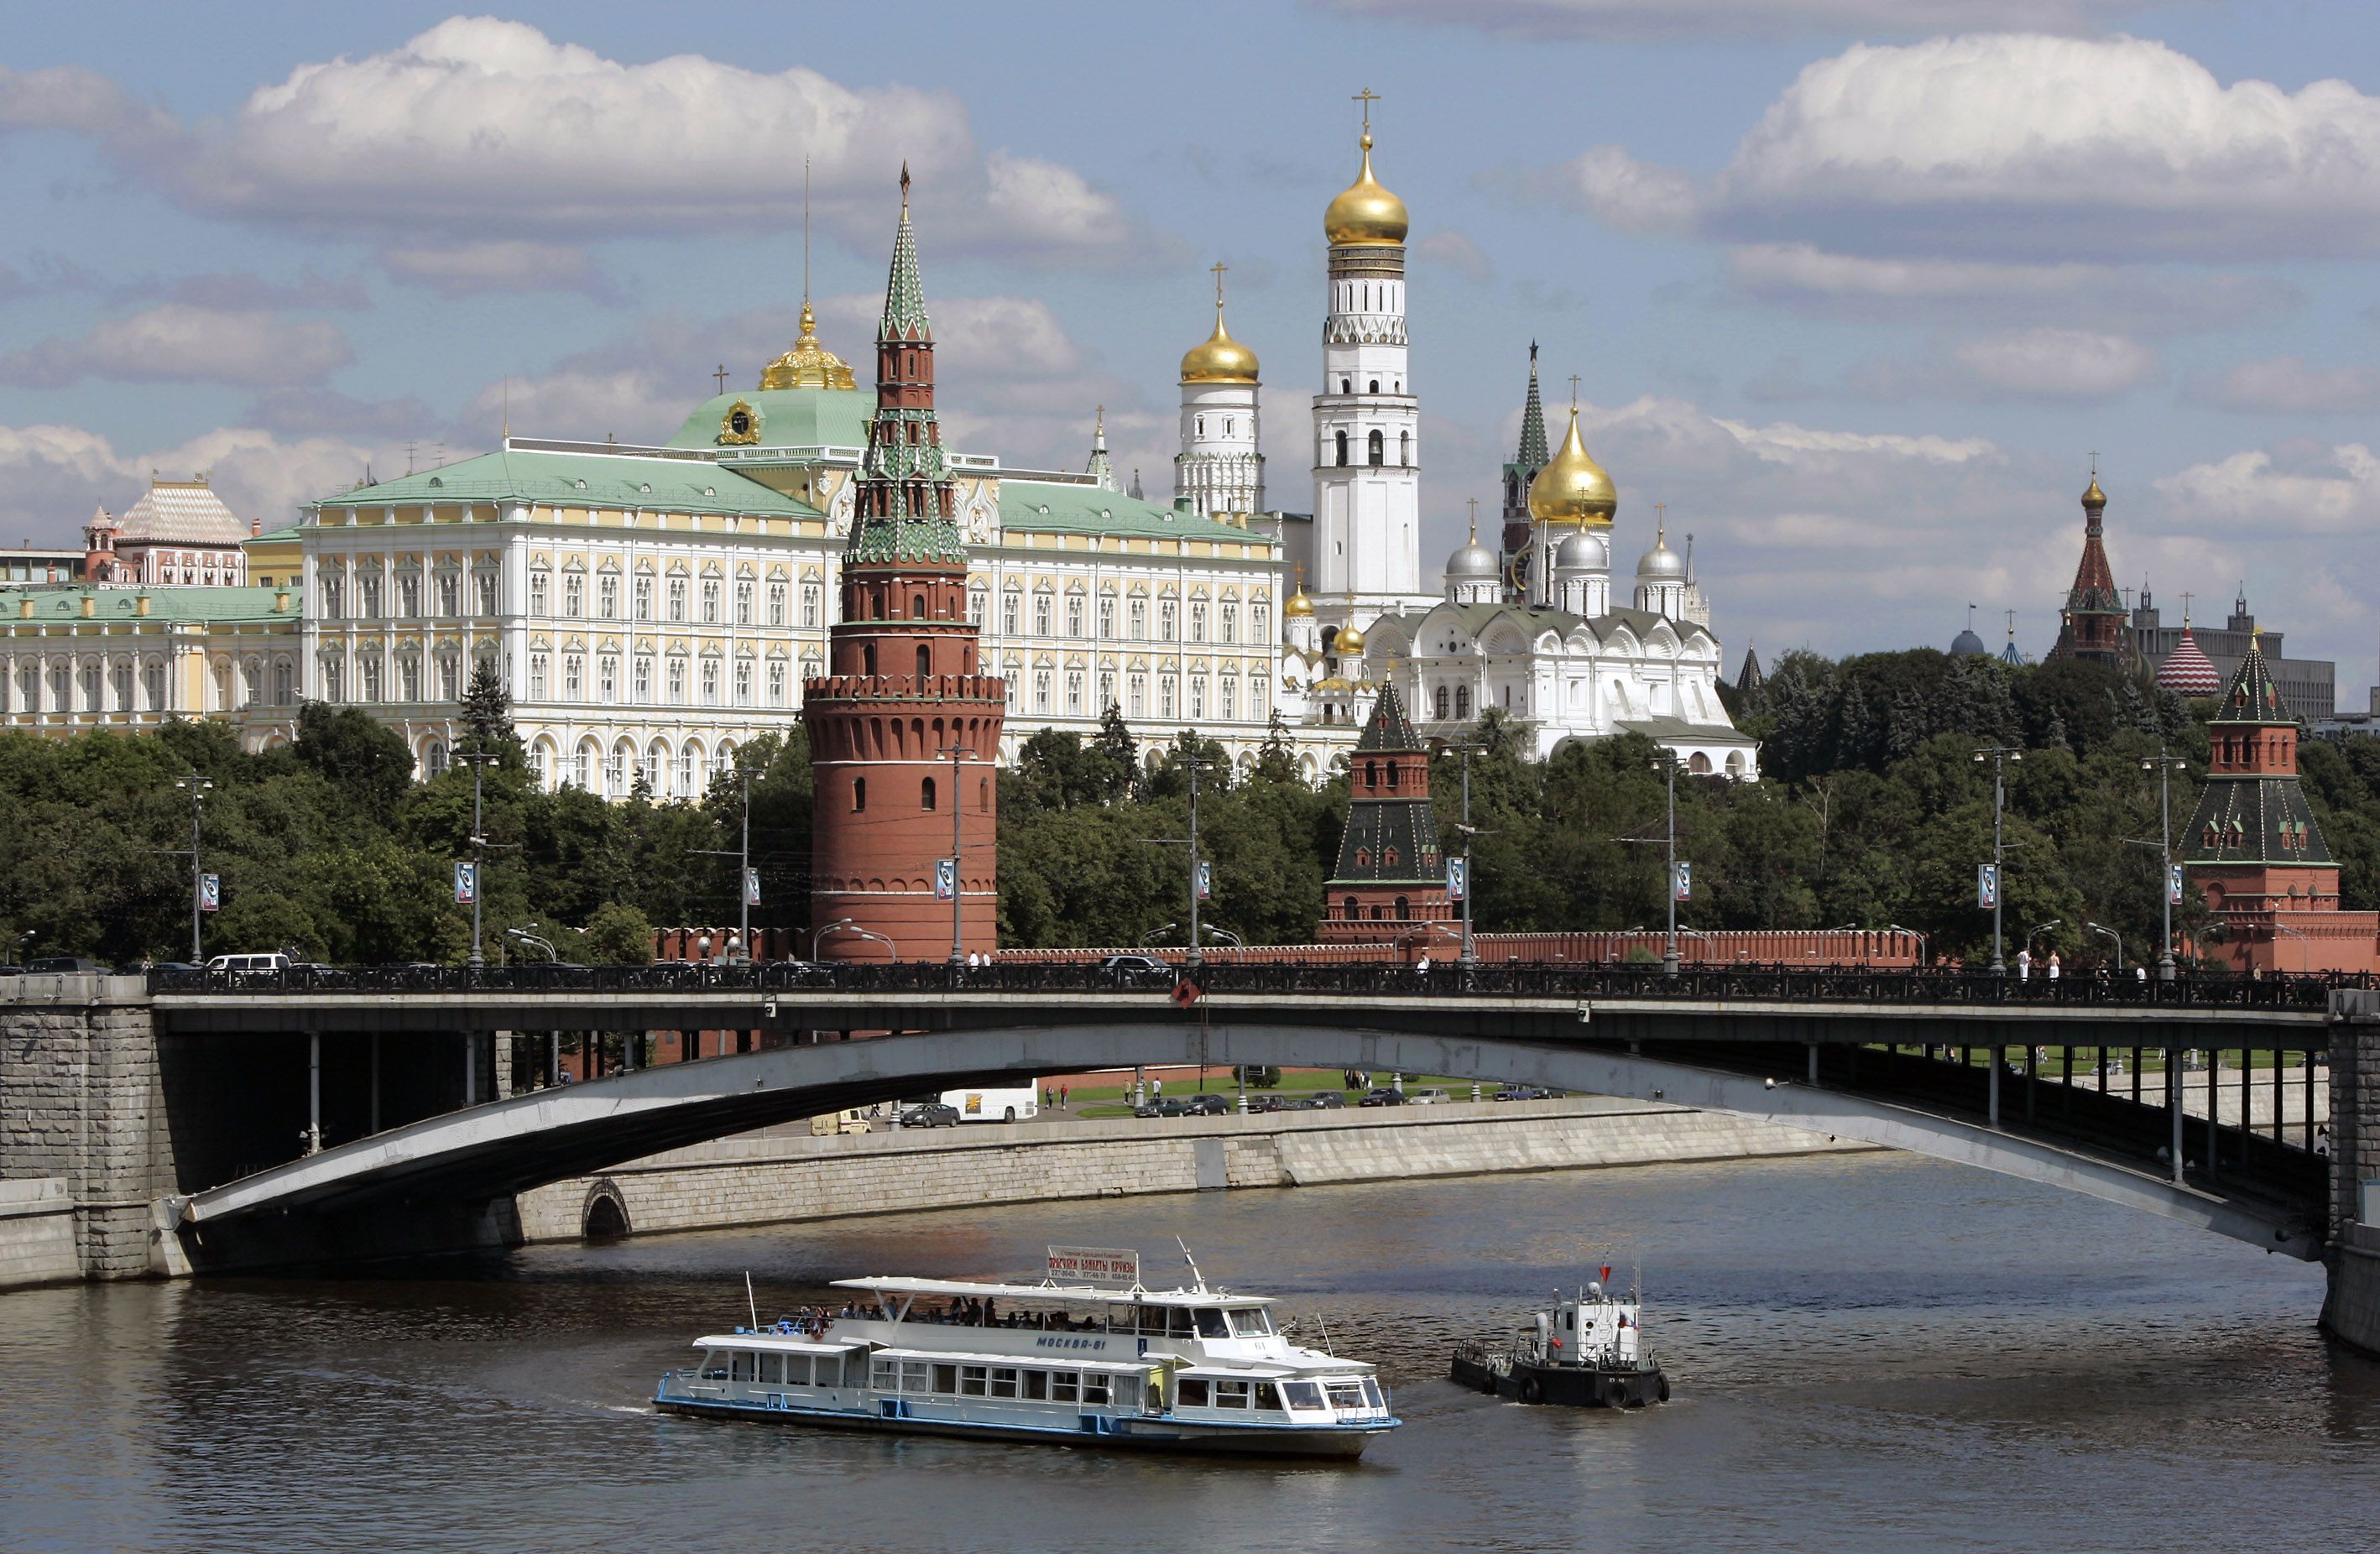 Foto de archivo en que se ven barcos fluviales en el río Moscú con el Kremlin de fondo, en Rusia.